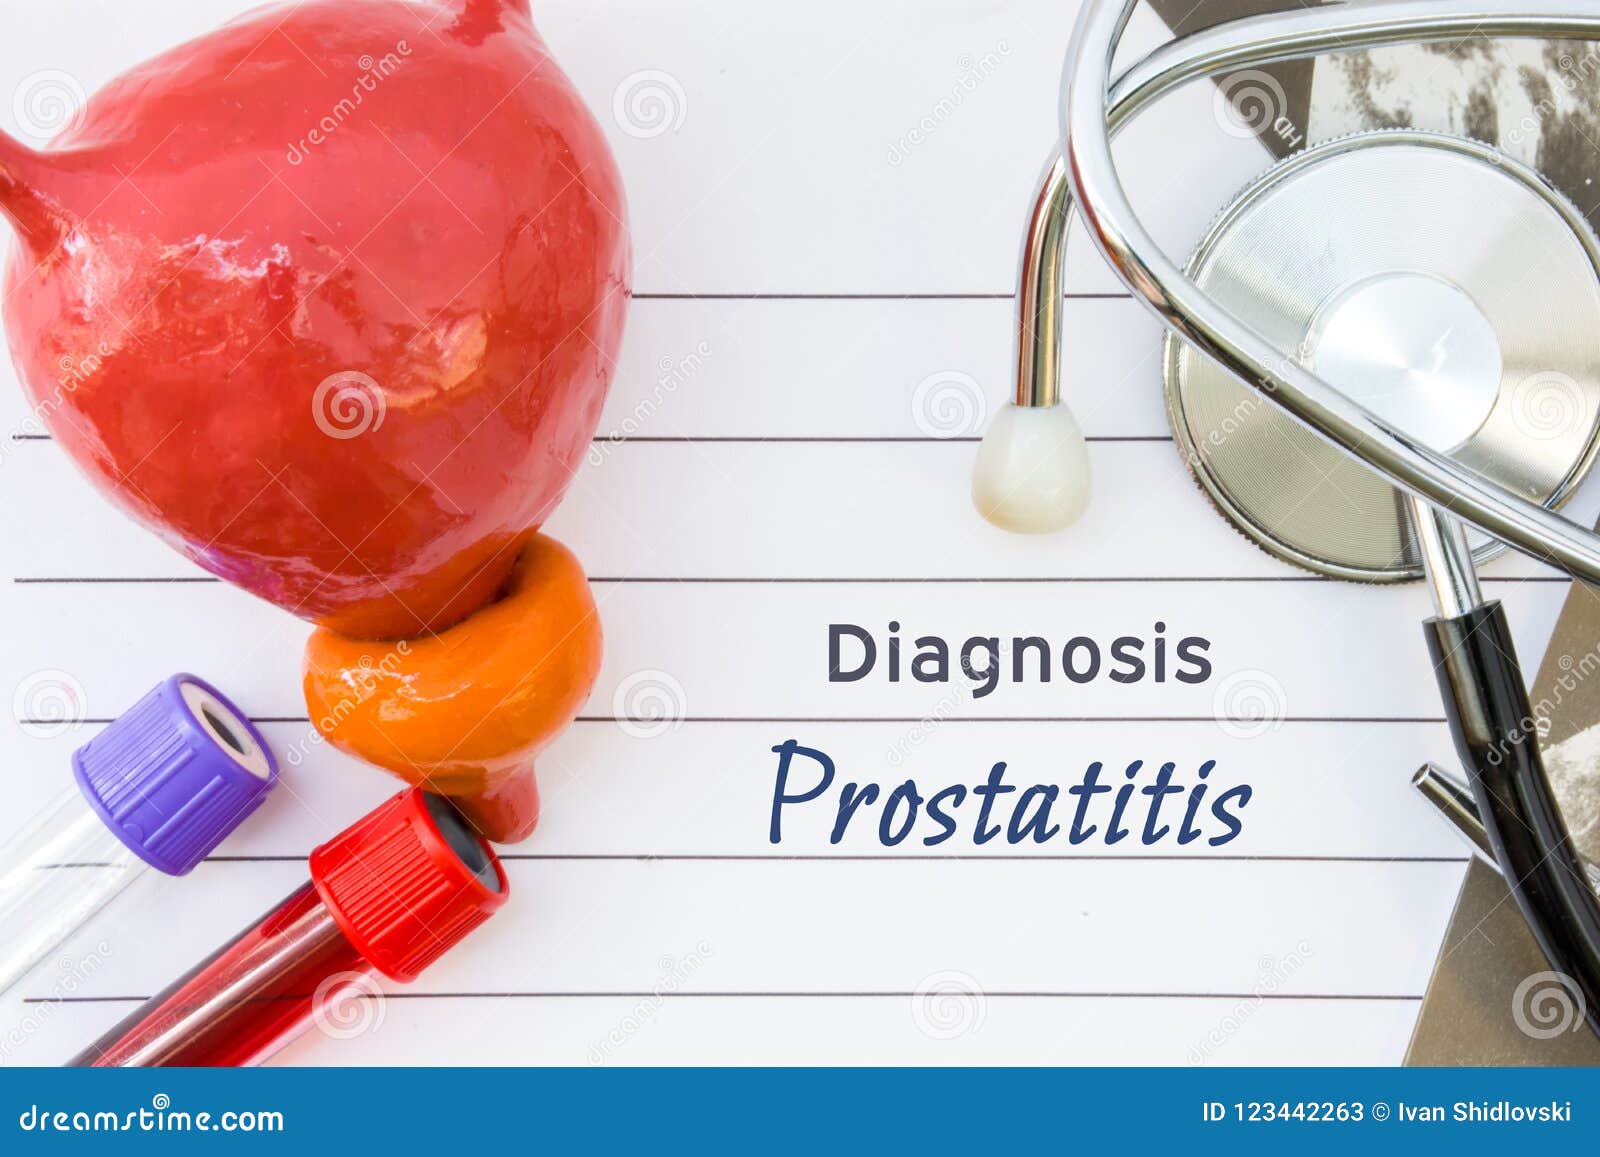 prostatitis diagnosis blood test)